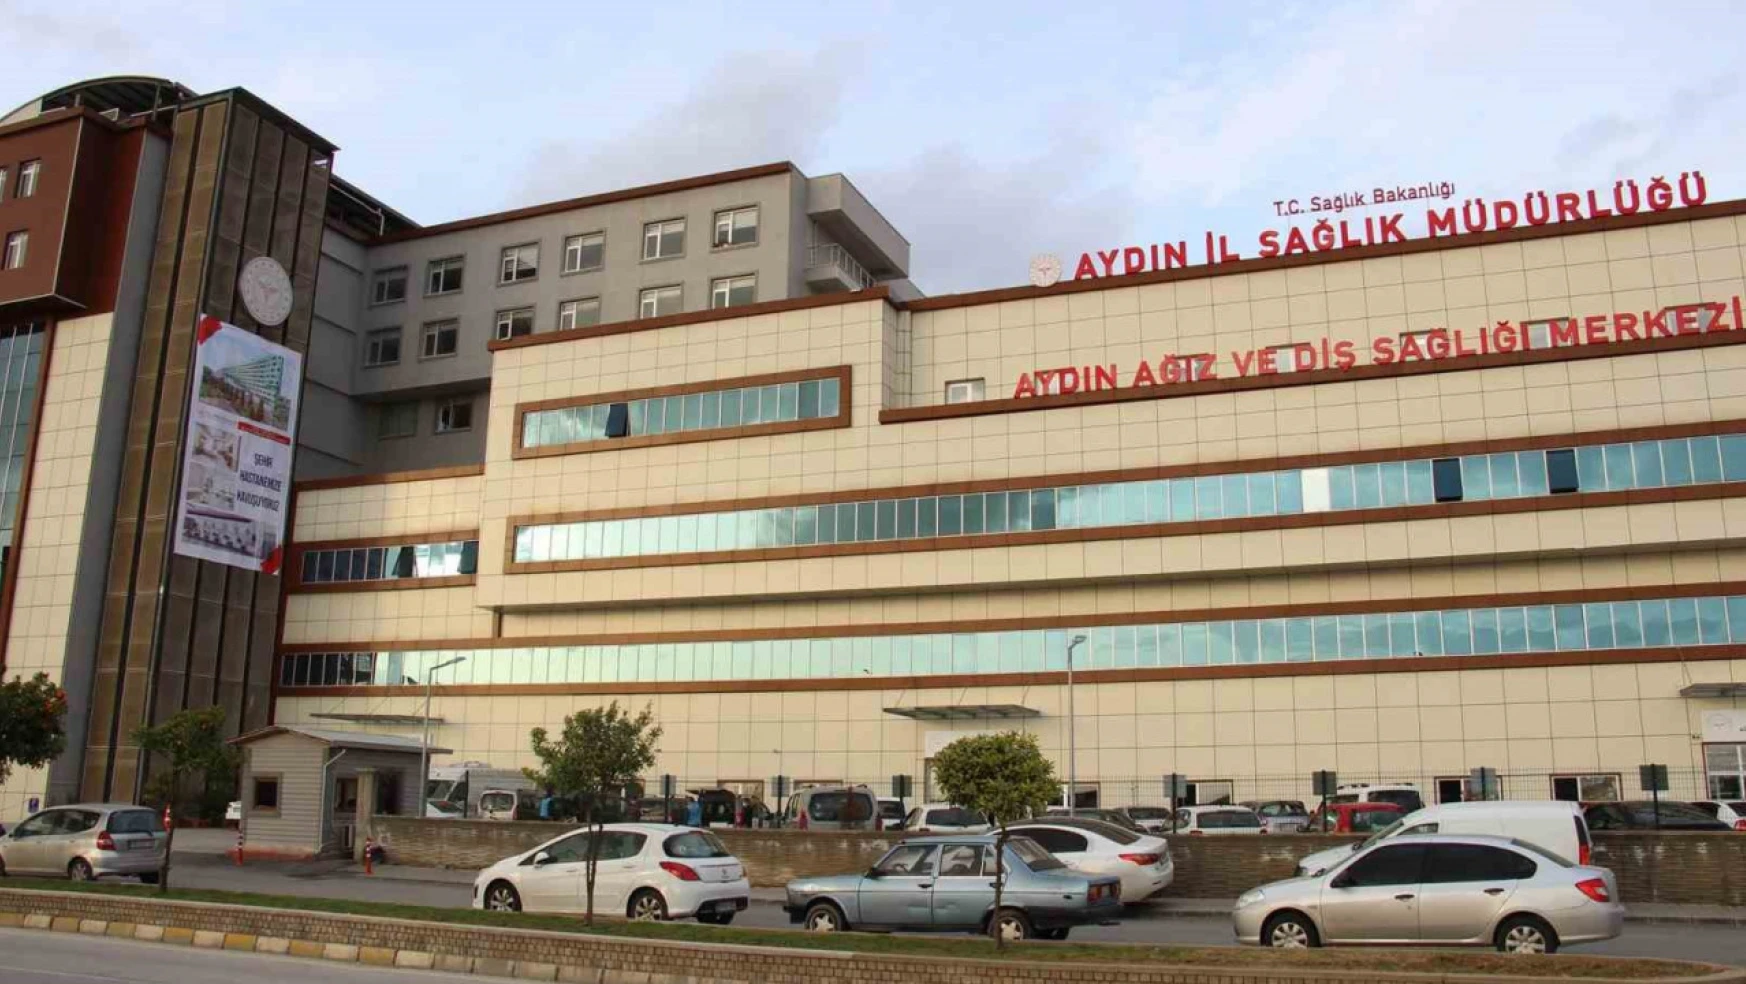 Aydın'da 9 bin sağlık personeli görev yapıyor